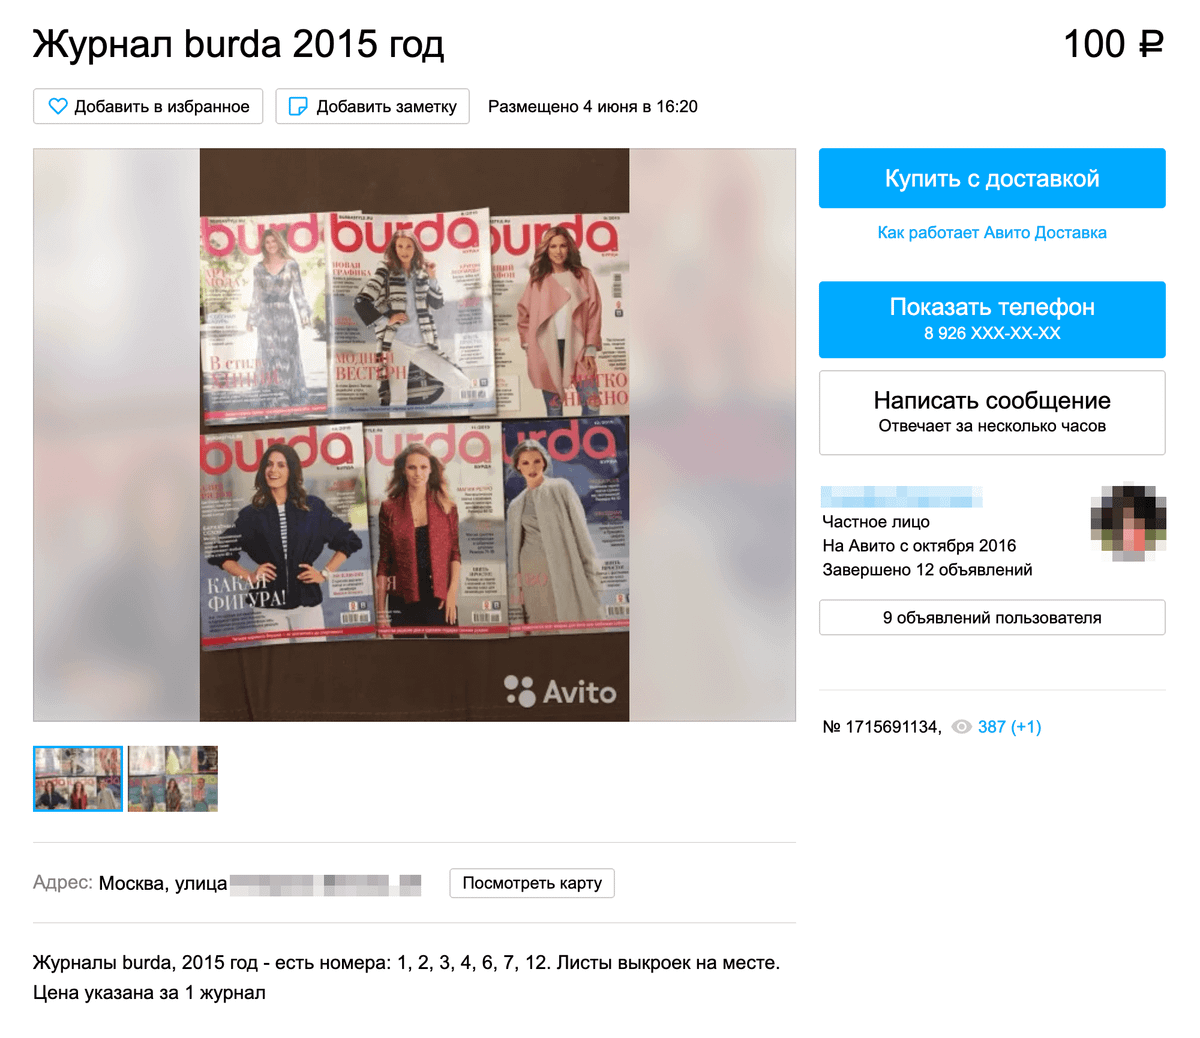 Журнал «Бурда» за июль 2015&nbsp;года с выкройкой моего жакета можно купить на «Авито» за 100 <span class=ruble>Р</span>. Я купила его в магазине ткани рядом с домом за 113 <span class=ruble>Р</span>